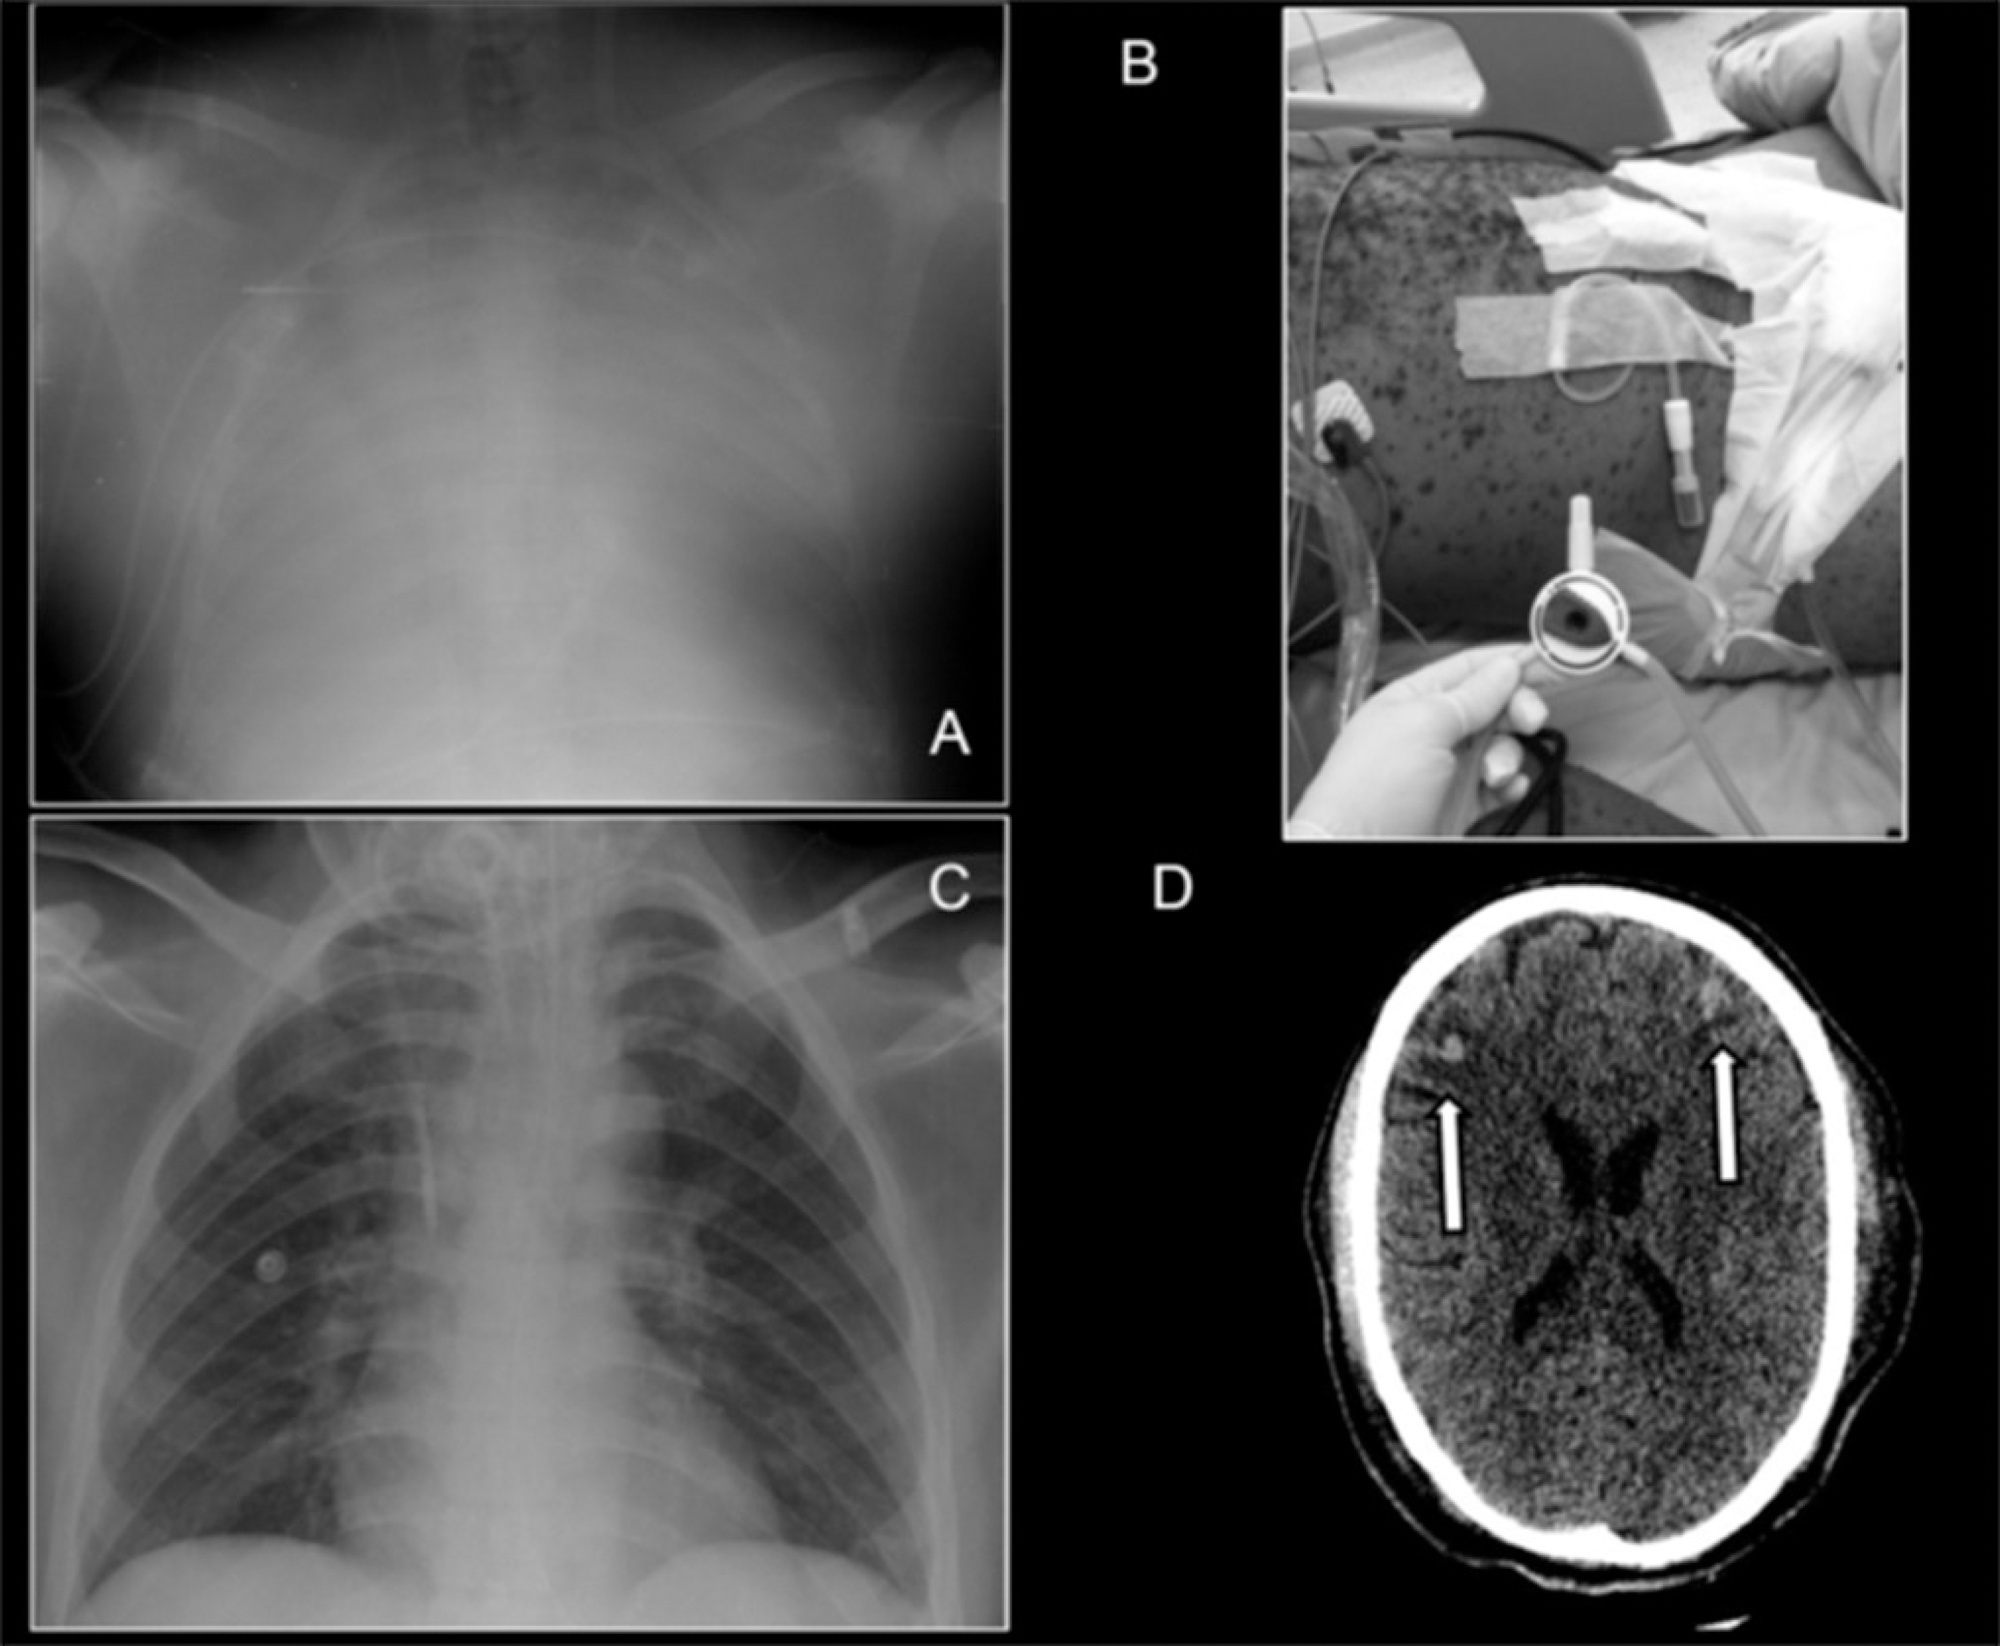 Síndrome da angústia respiratória aguda associada à varicela em paciente
               adulto: exemplo de suporte respiratório extracorpóreo em doenças endêmicas
               brasileiras